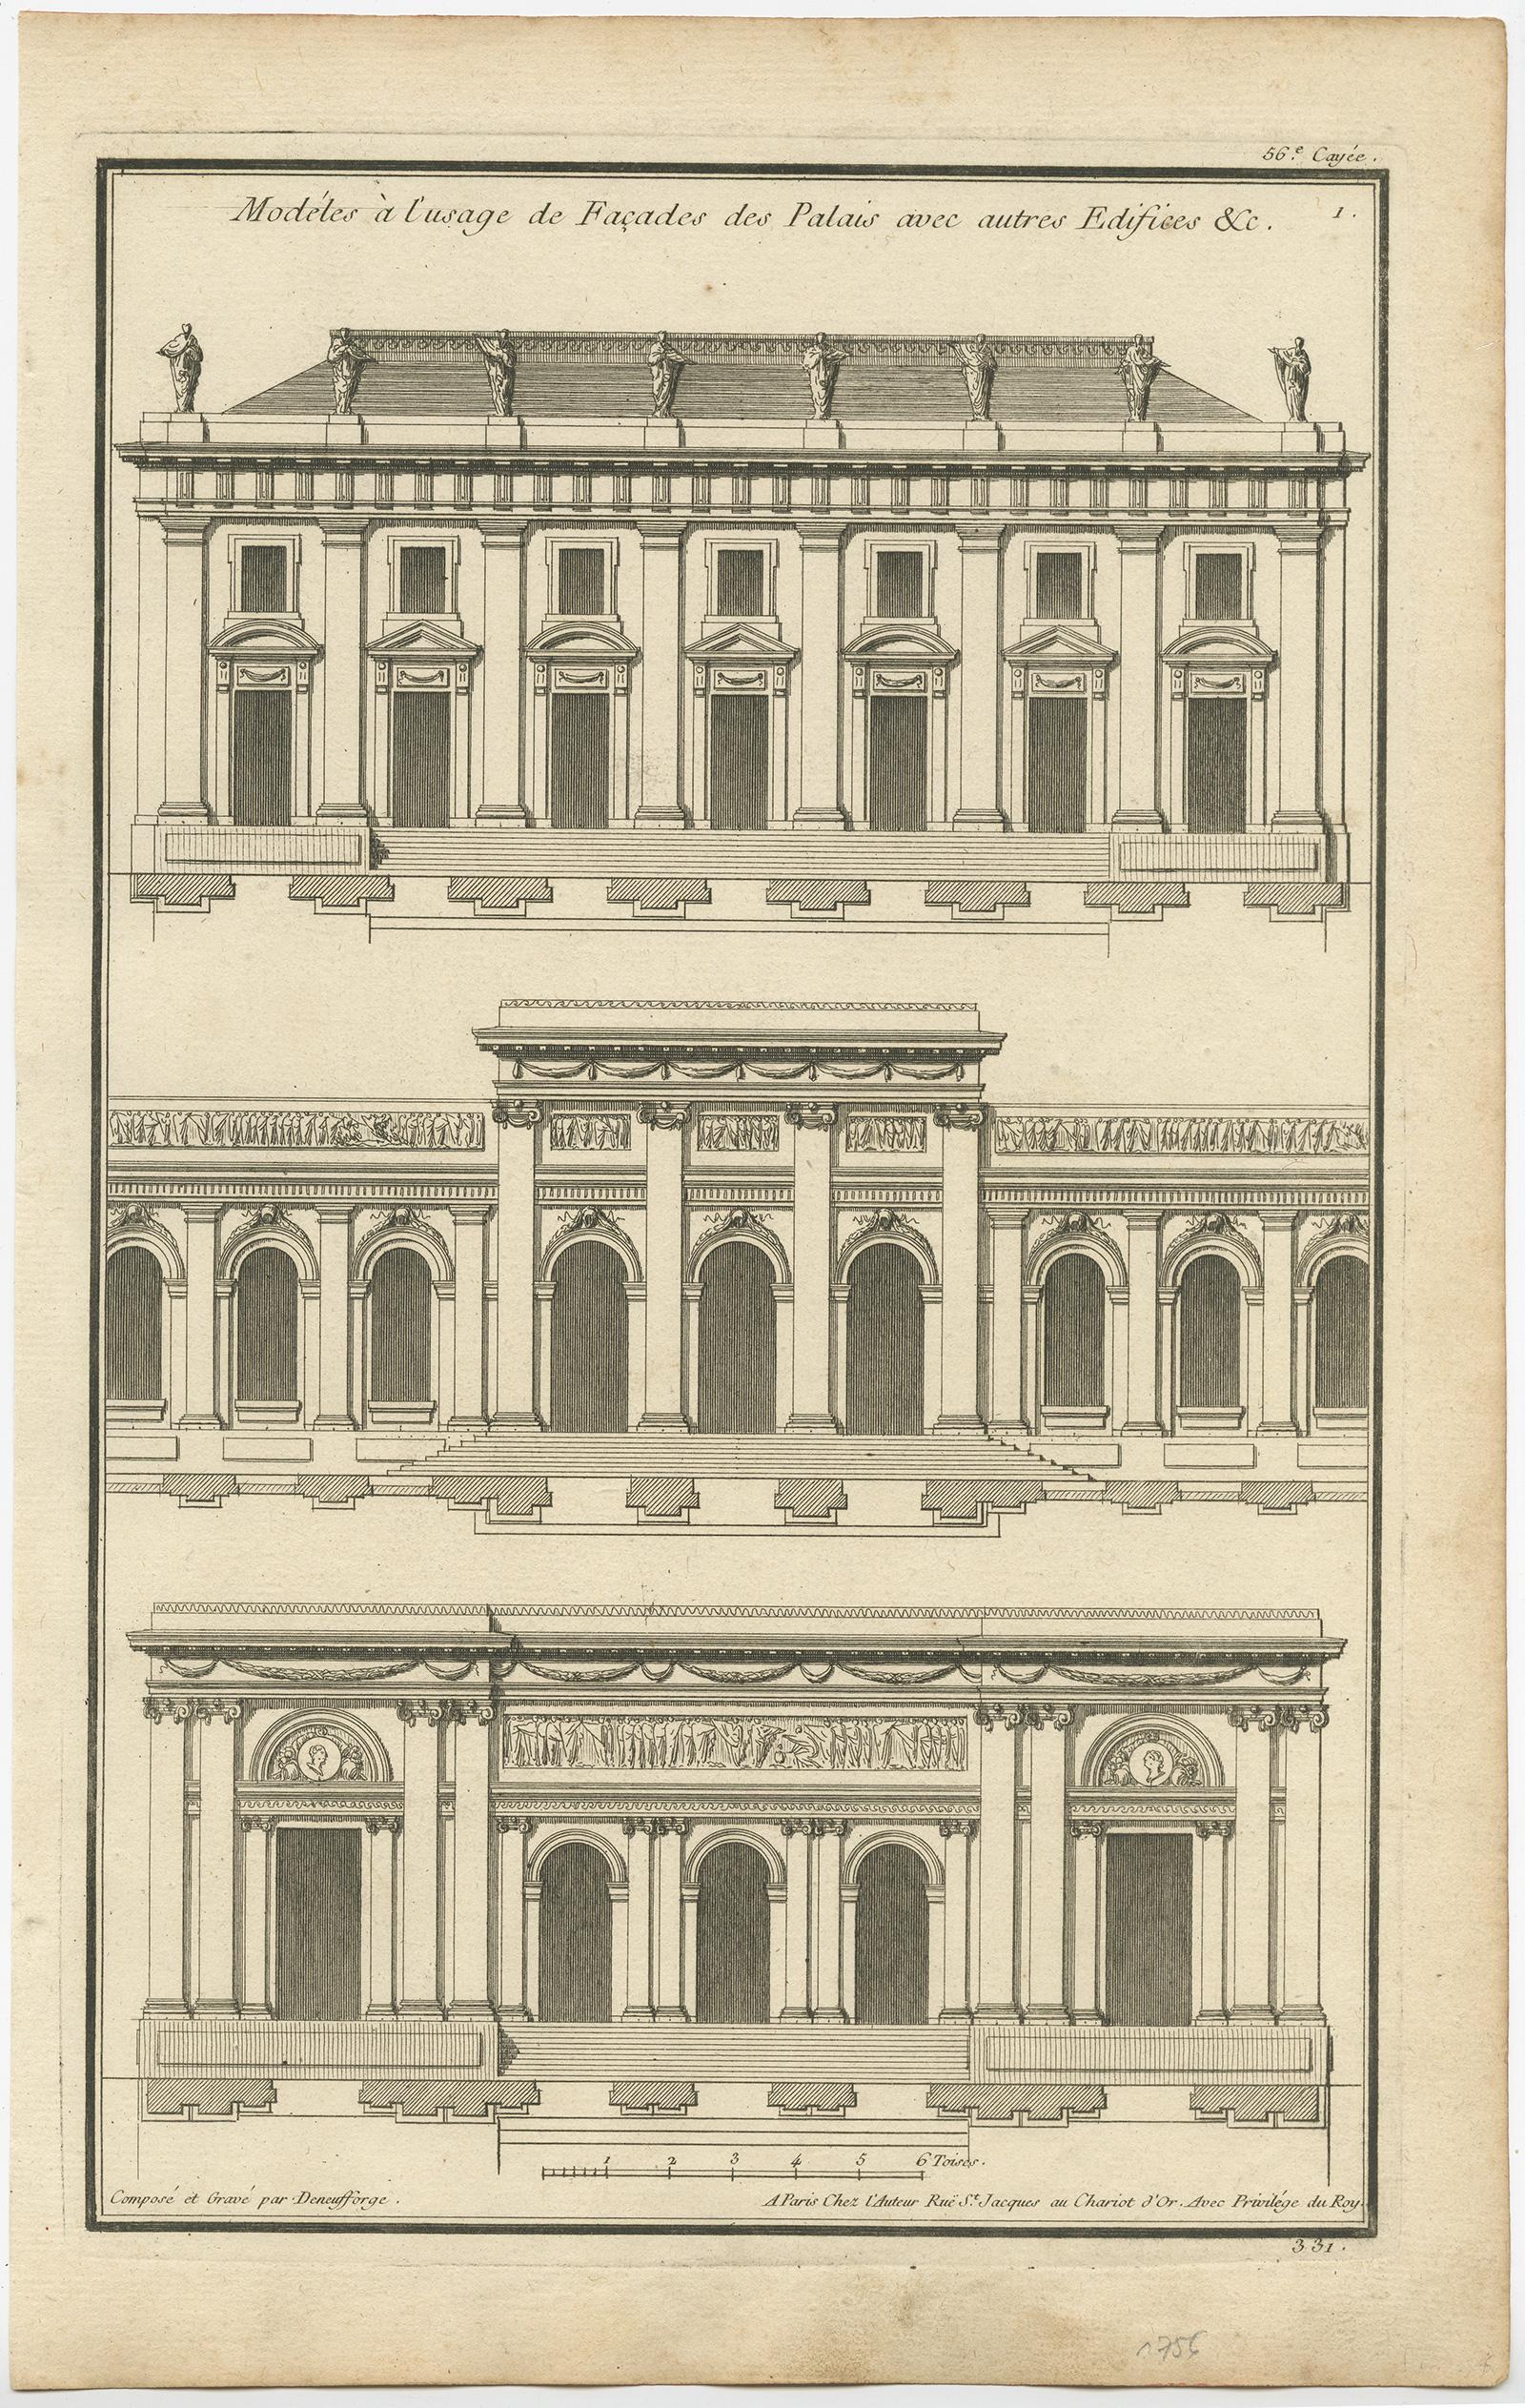 Satz von vier Architekturdrucken, die verschiedene Palastfassaden darstellen. Diese Drucke stammen aus dem 